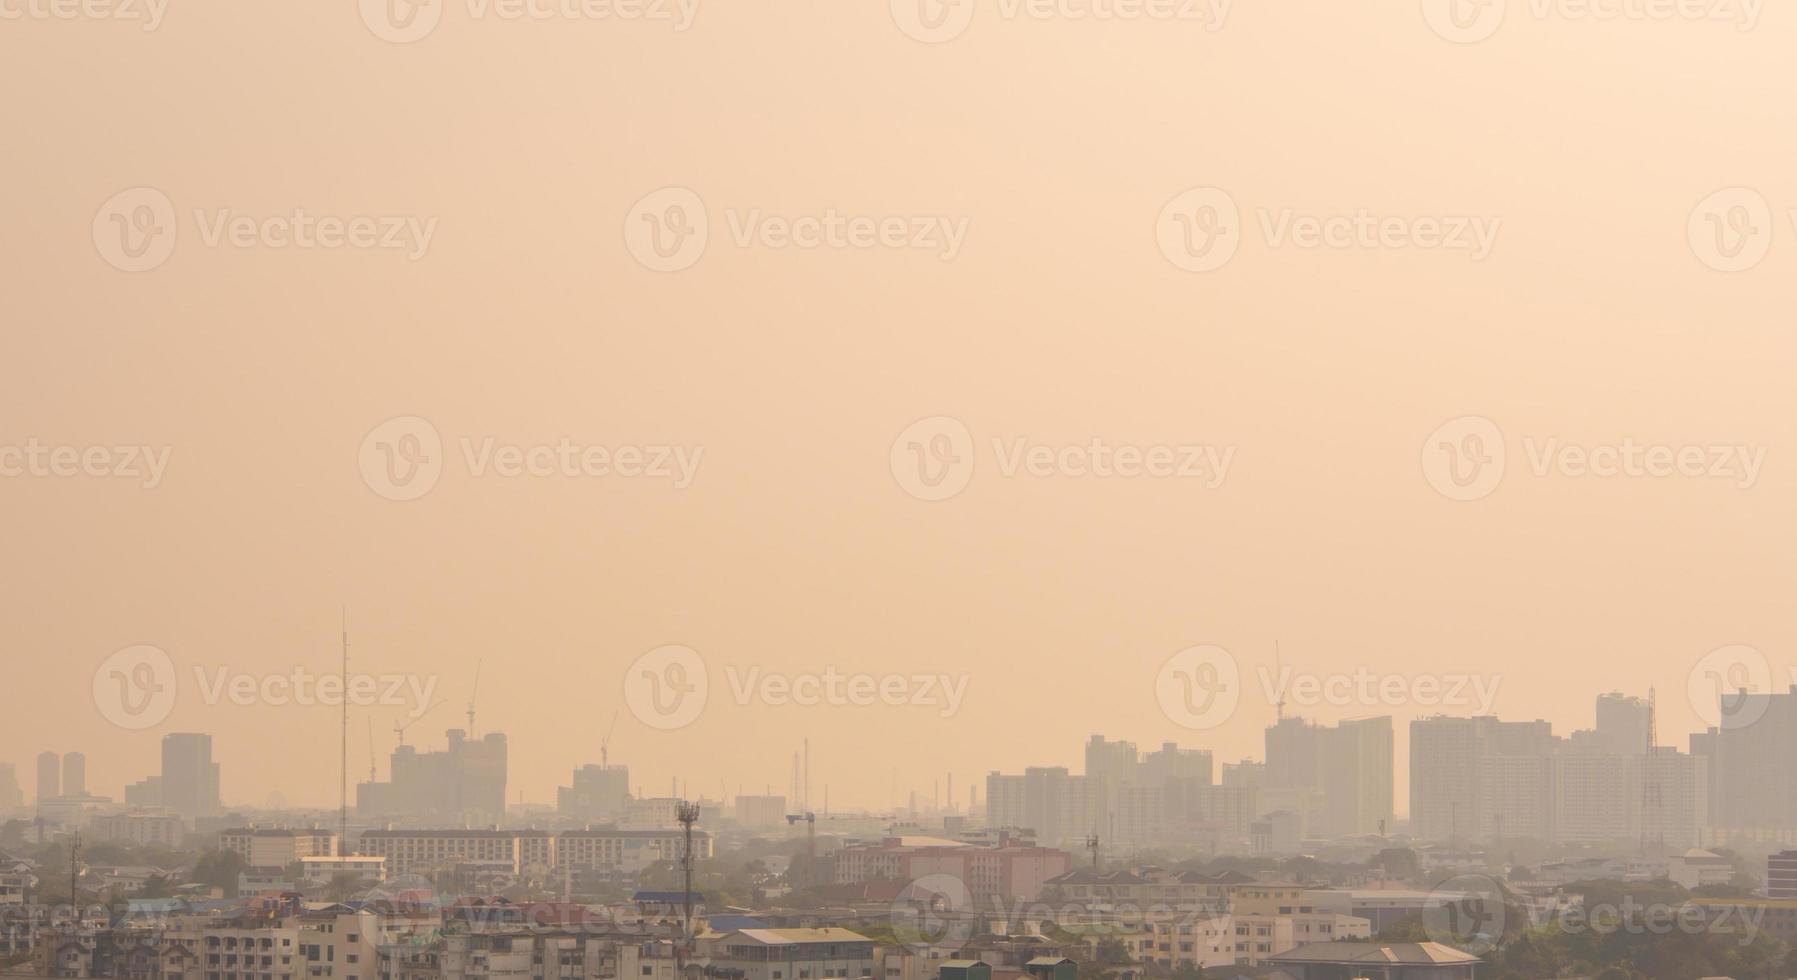 skyline urbano di paesaggio urbano nella nebbia o nello smog. immagine ampia e alta della città di Bangkok nella luce soffusa foto